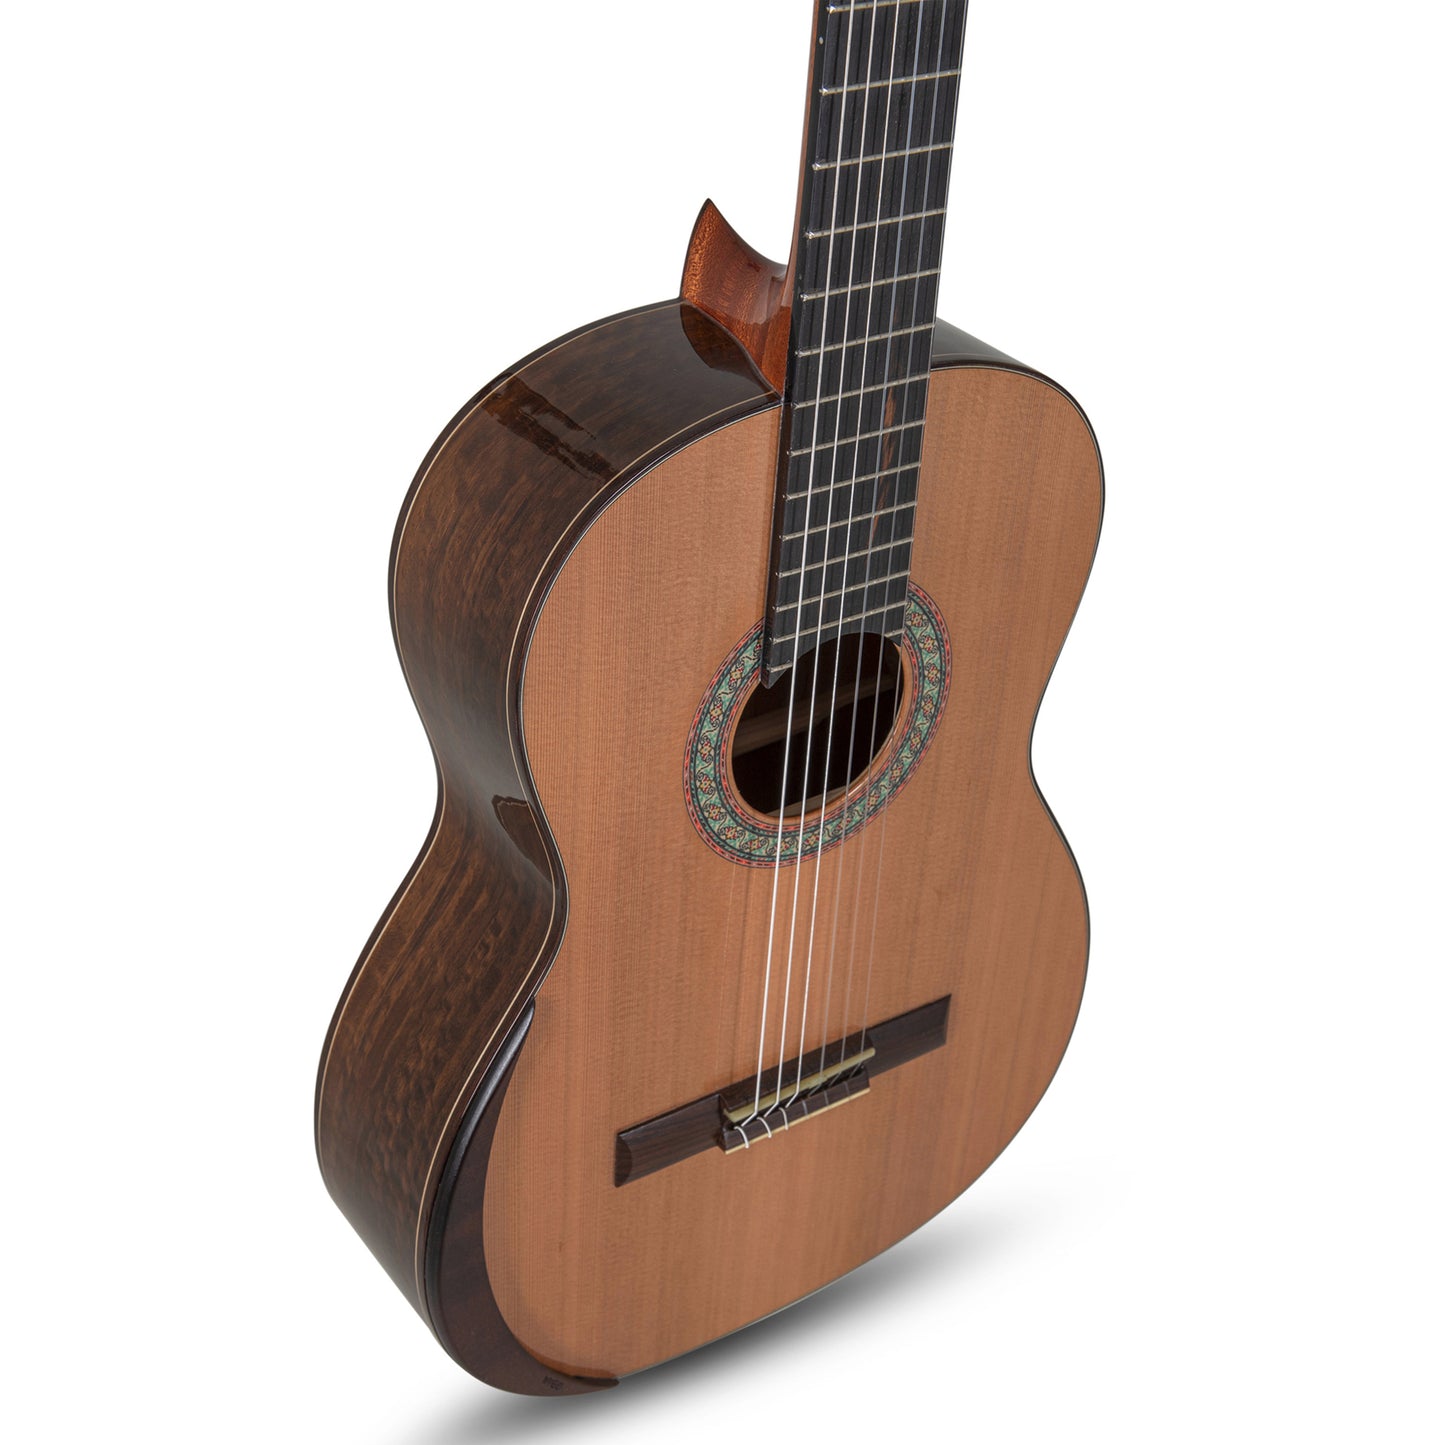 Manuel Rodriguez Superior B-C Eukalyptus Acoustic Guitar - Solid Cedar Top